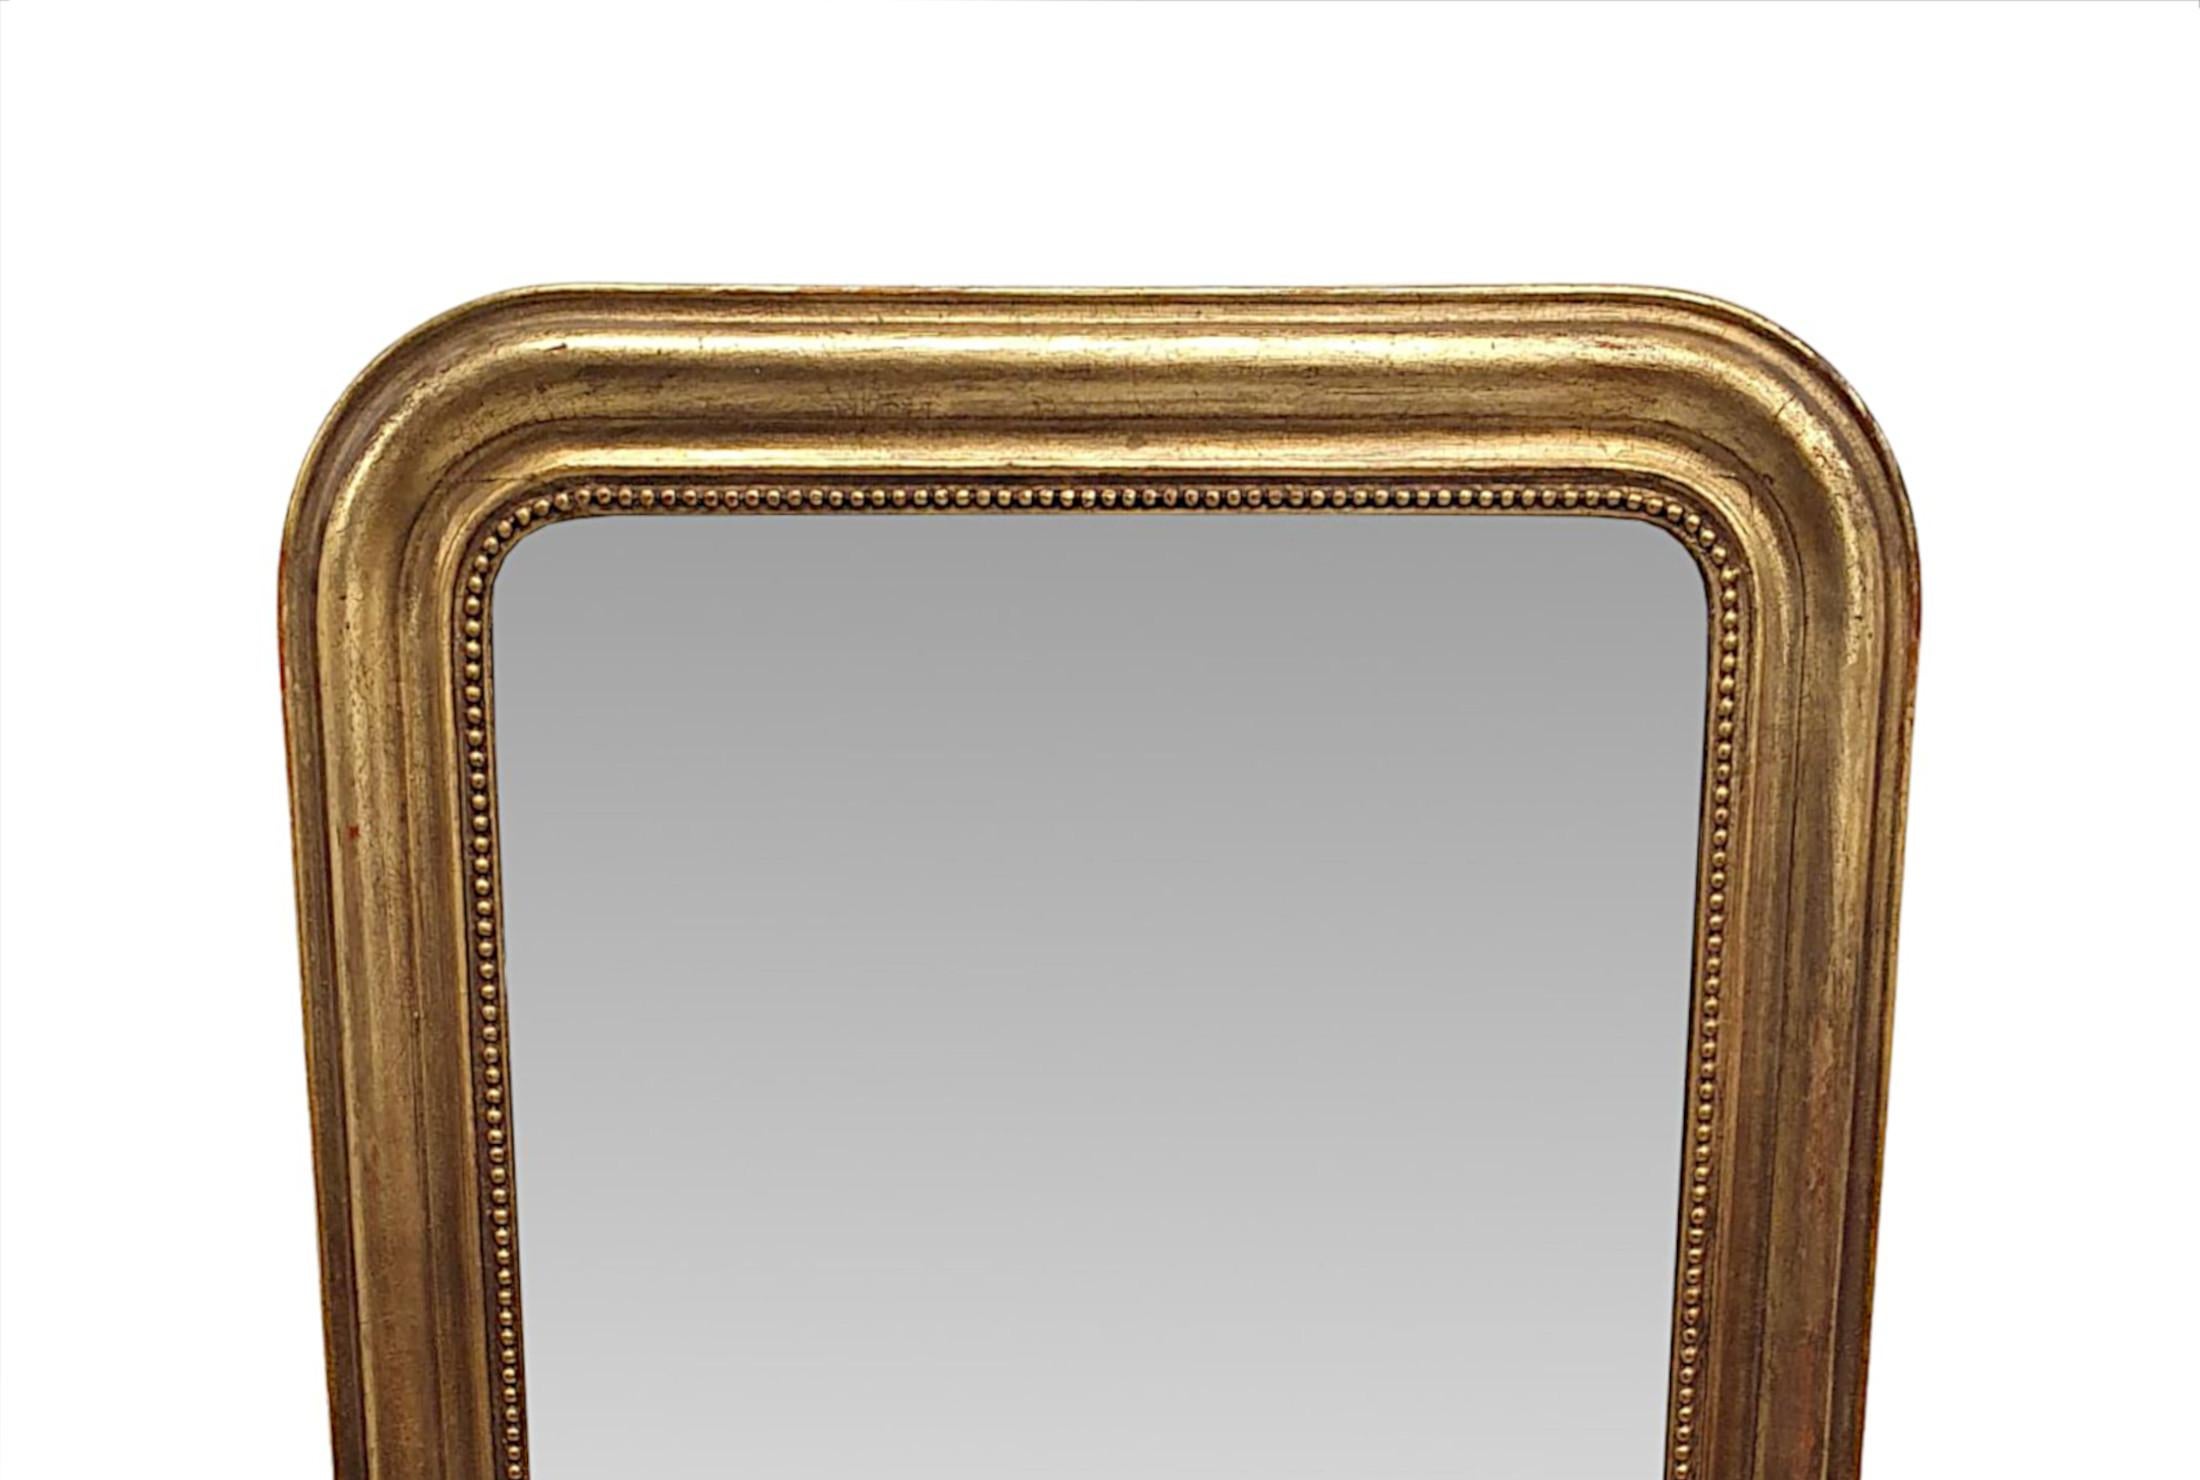 Un beau miroir d'entrée ou de salle de bain en bois doré du 19e siècle, d'une qualité fabuleuse et aux proportions soignées.  La plaque de verre miroir de forme rectangulaire est enchâssée dans un cadre en bois doré finement sculpté à la main,